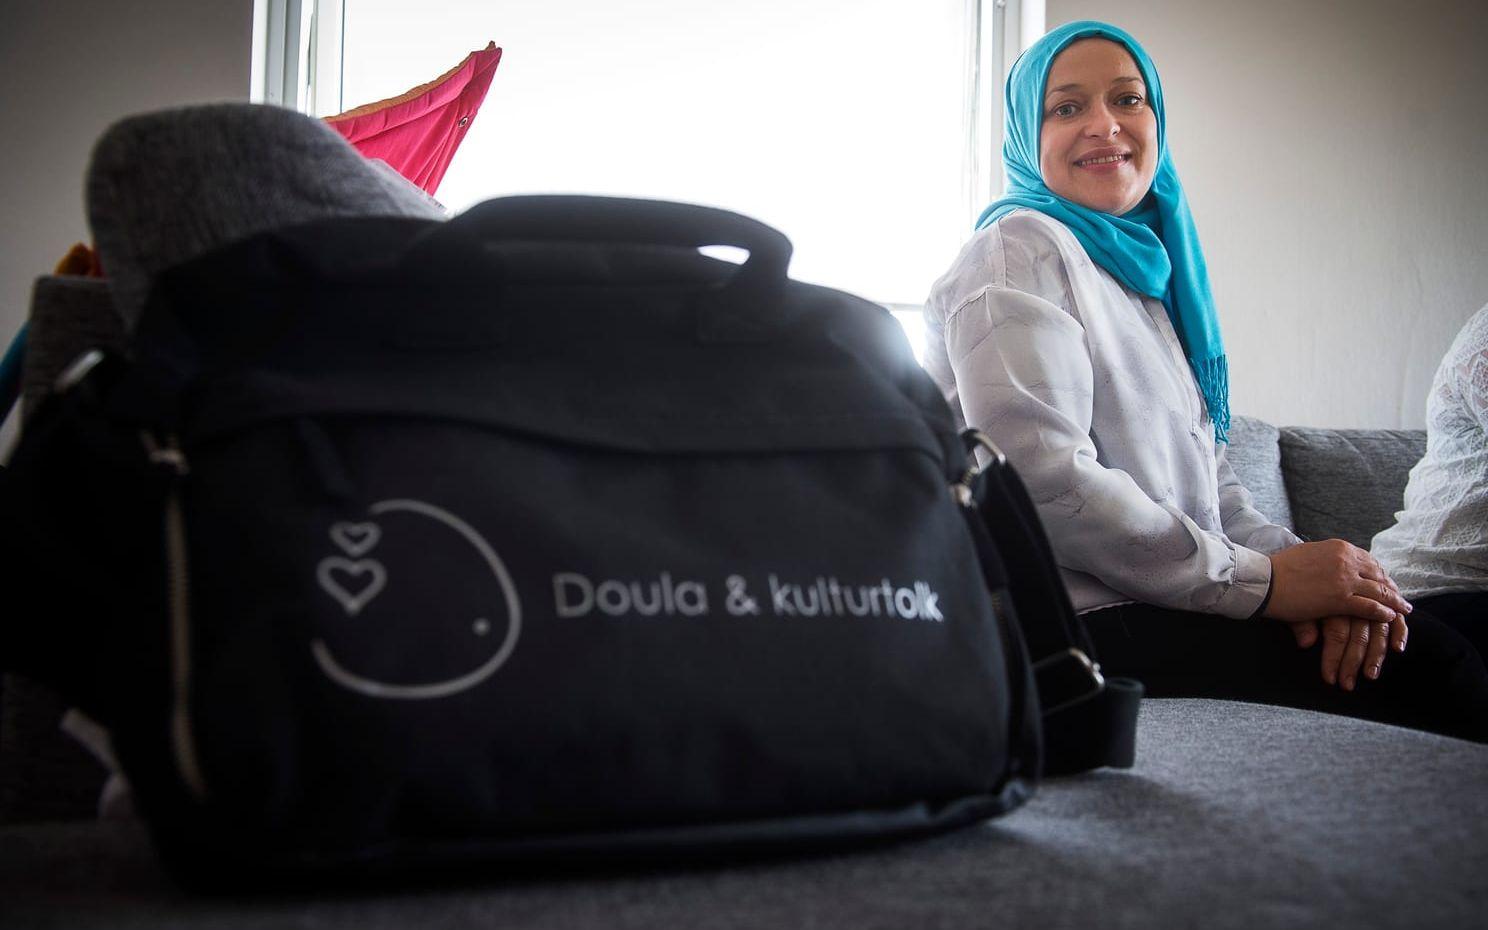 Uppskattat stöd. Alla Panina-Sariul är utbildad tandläkare, men arbetar som doula i väntan på en svensk legitimation. ”Det känns roligt att kunna vara till hjälp”, säger hon.